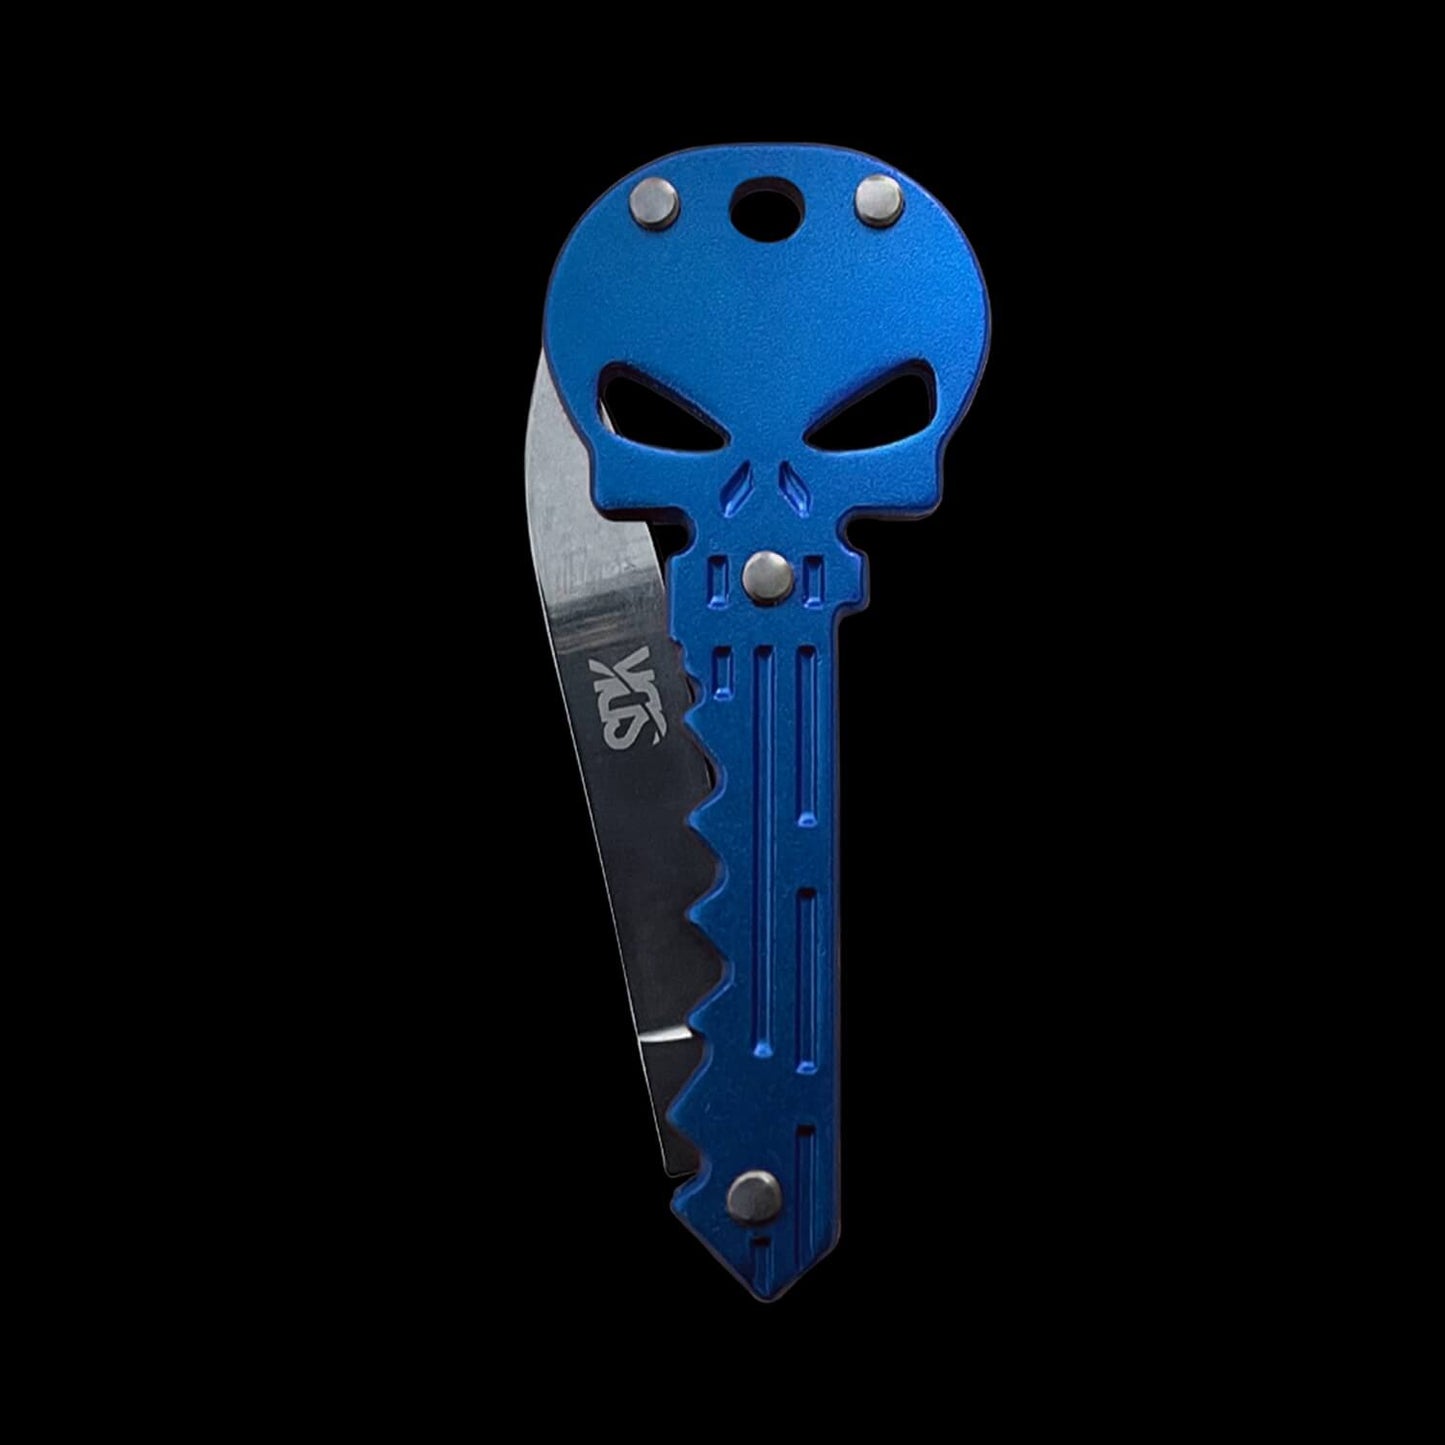 SDK Skull Knife Blue (stainless steel skull-shaped flip knife)